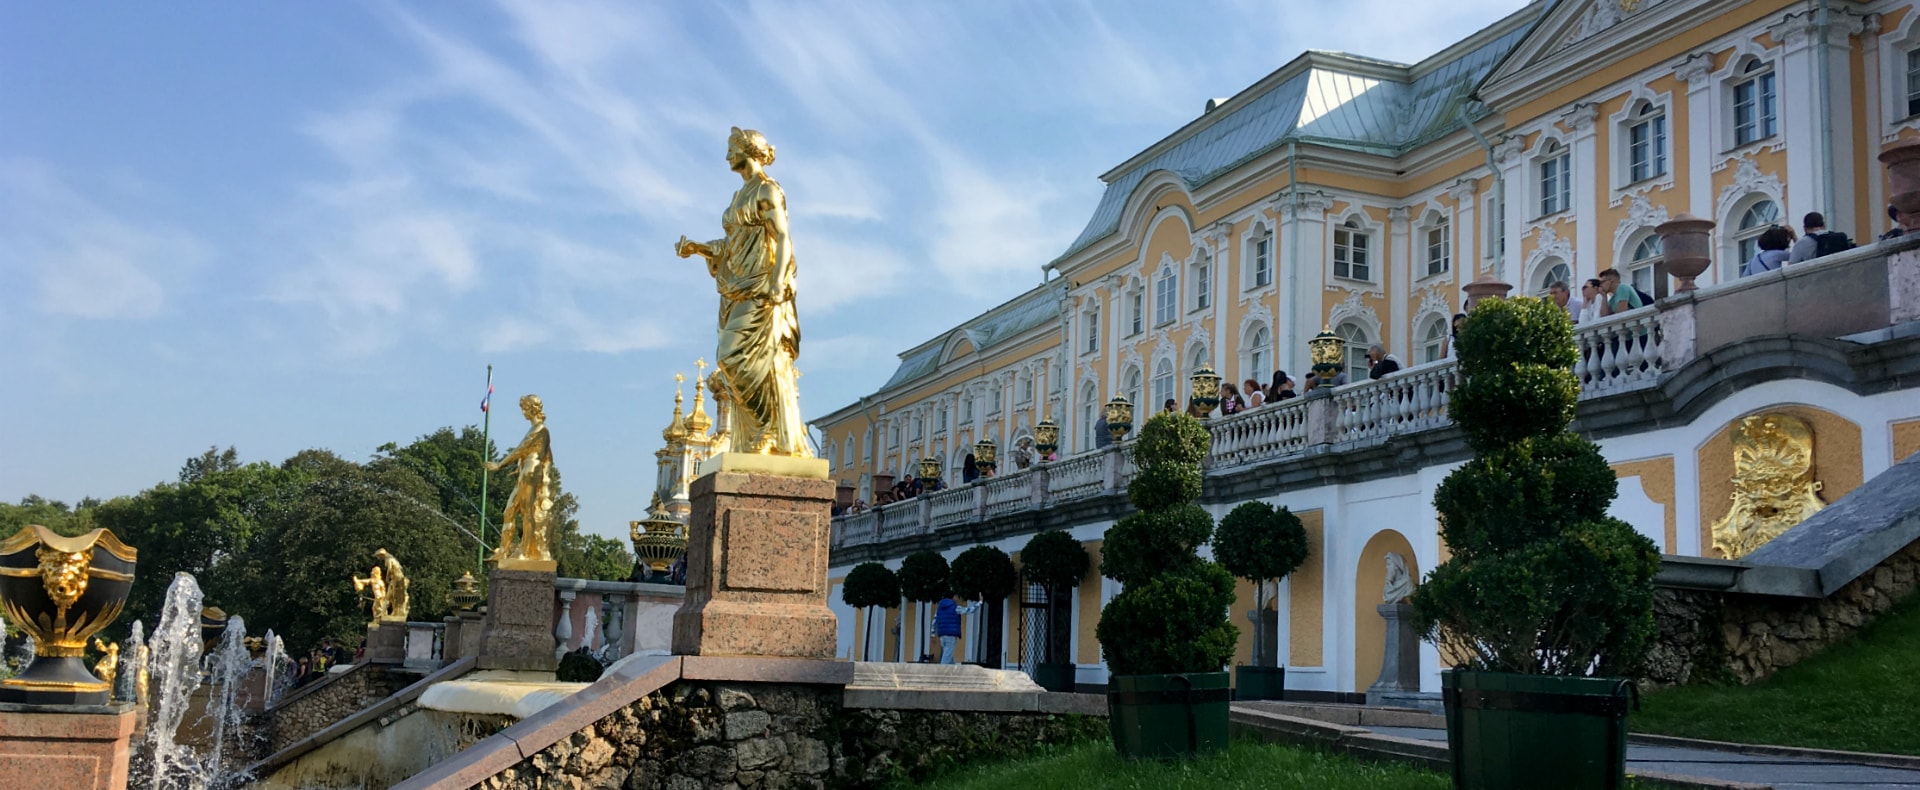 Peterhof, St. Petersburg